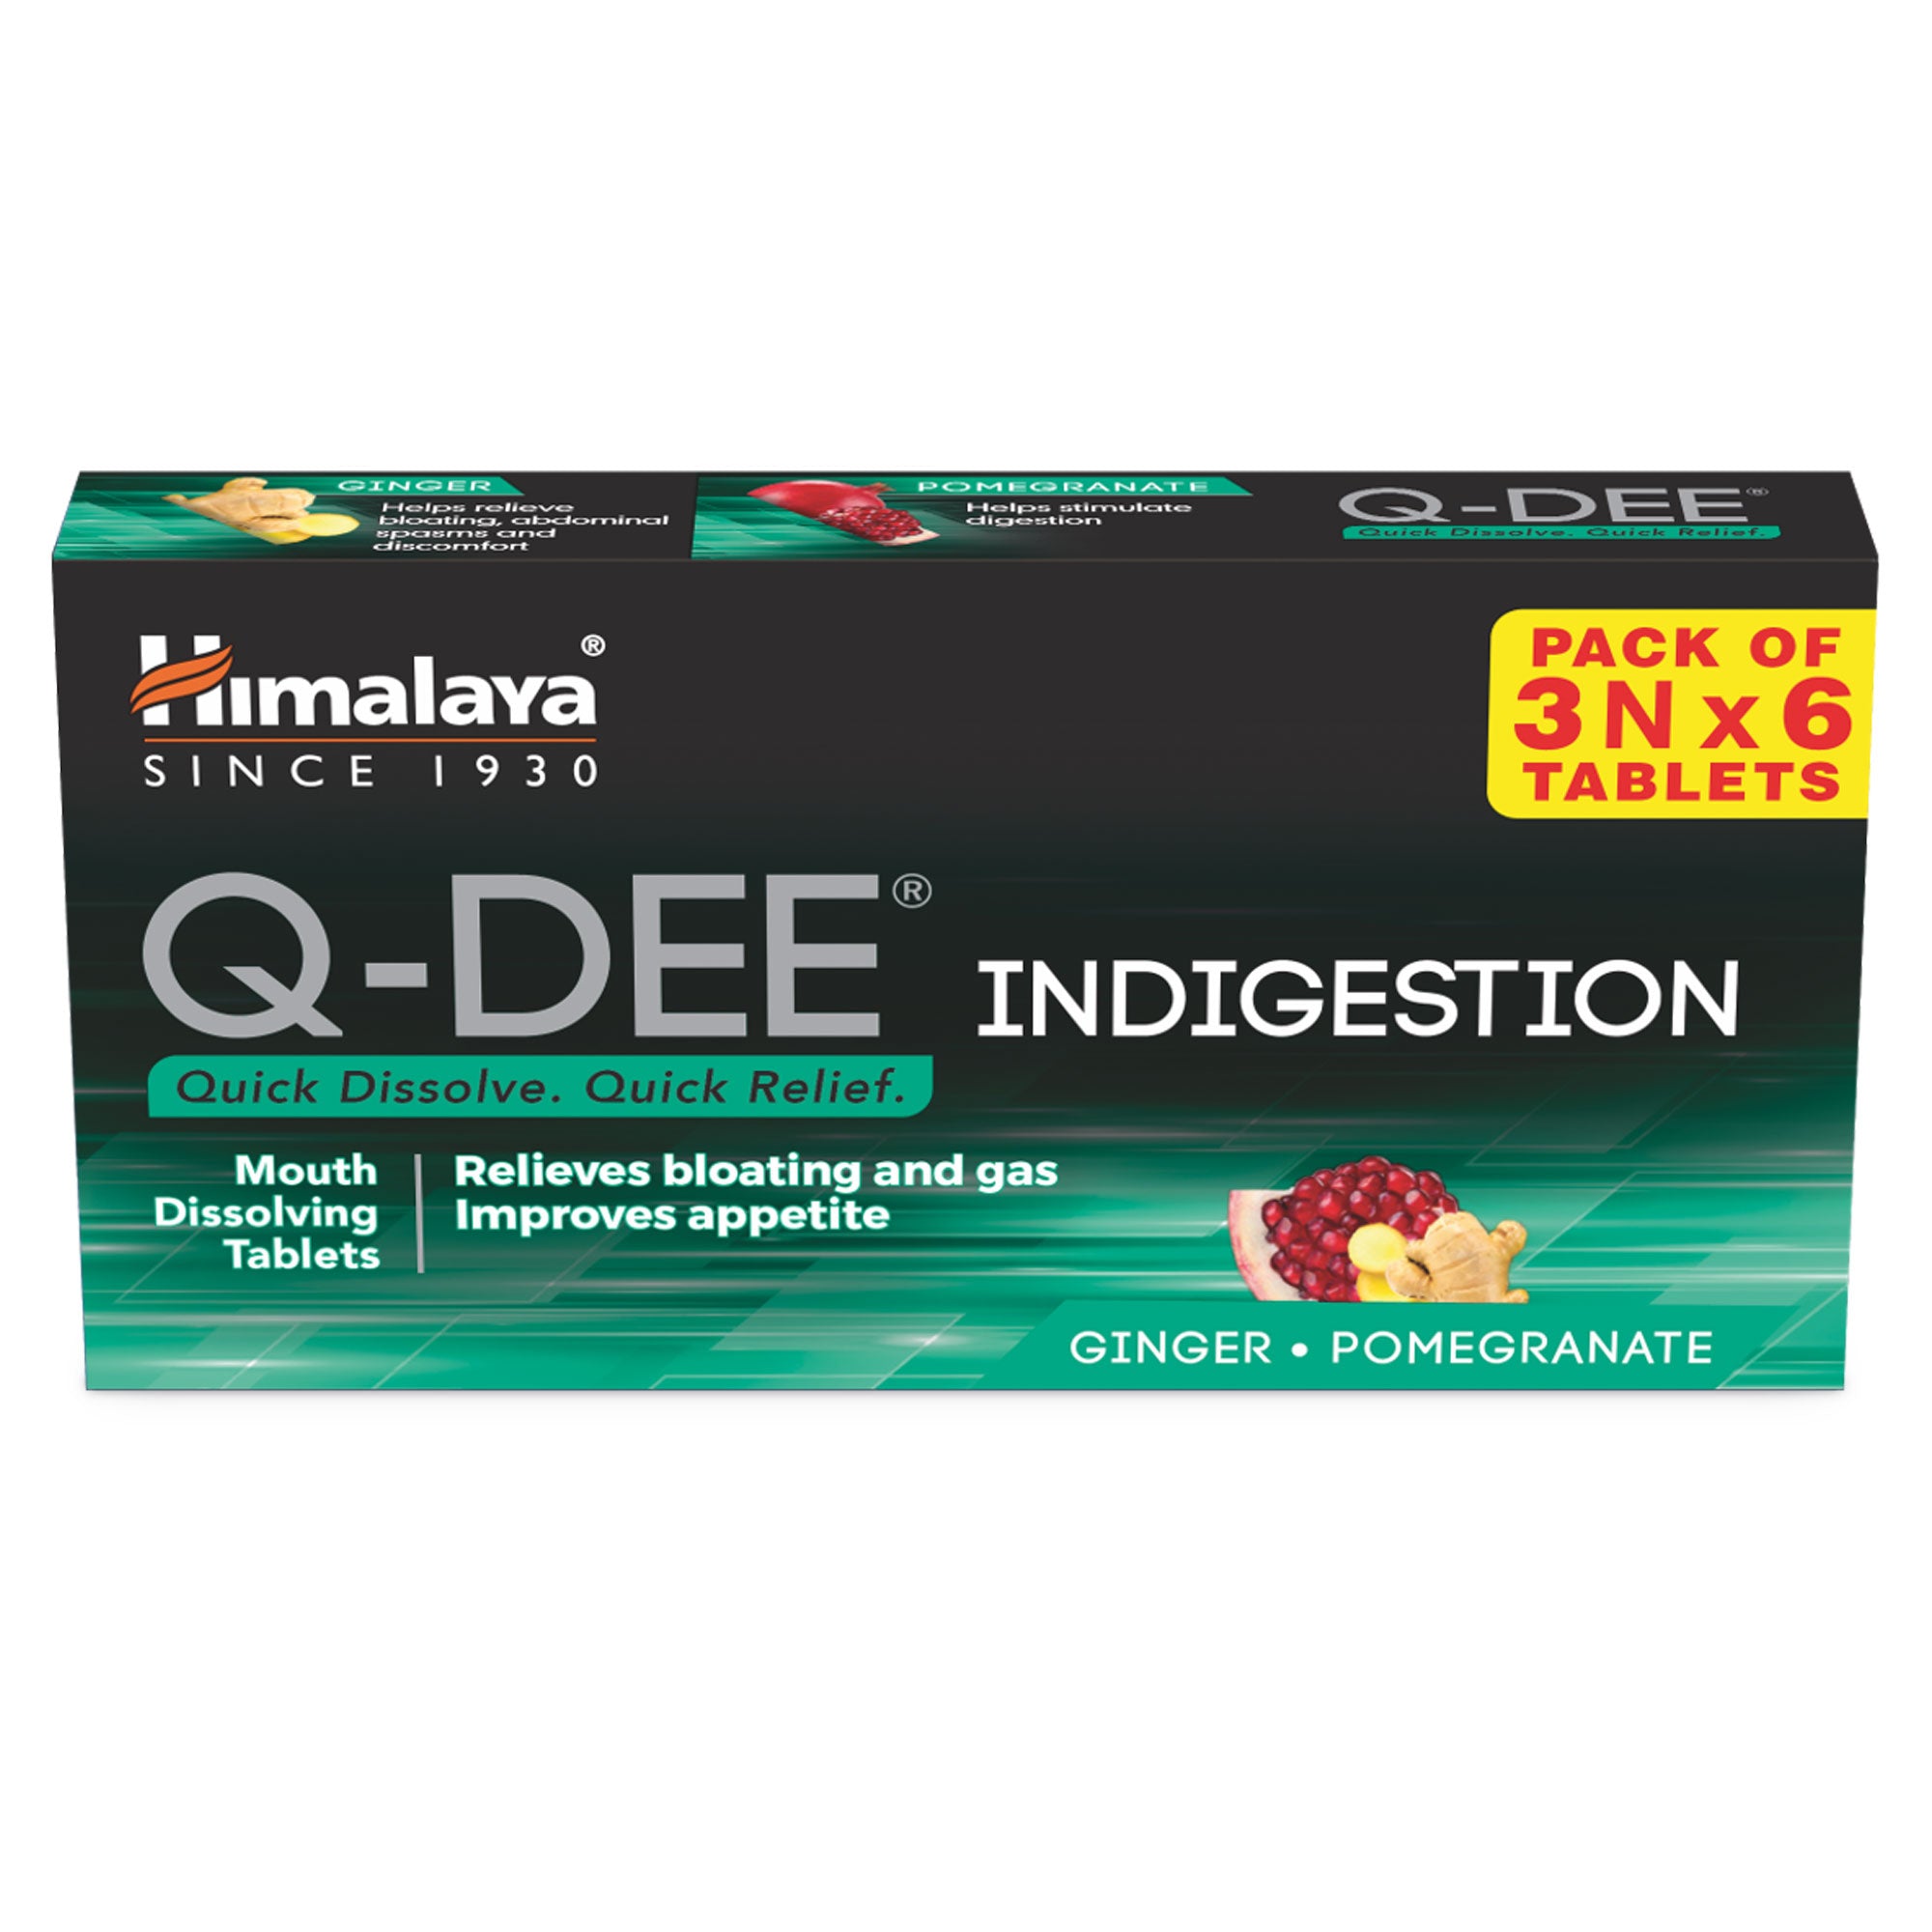 Himalaya Q-DEE Indigestion Tablets - 3Nx6